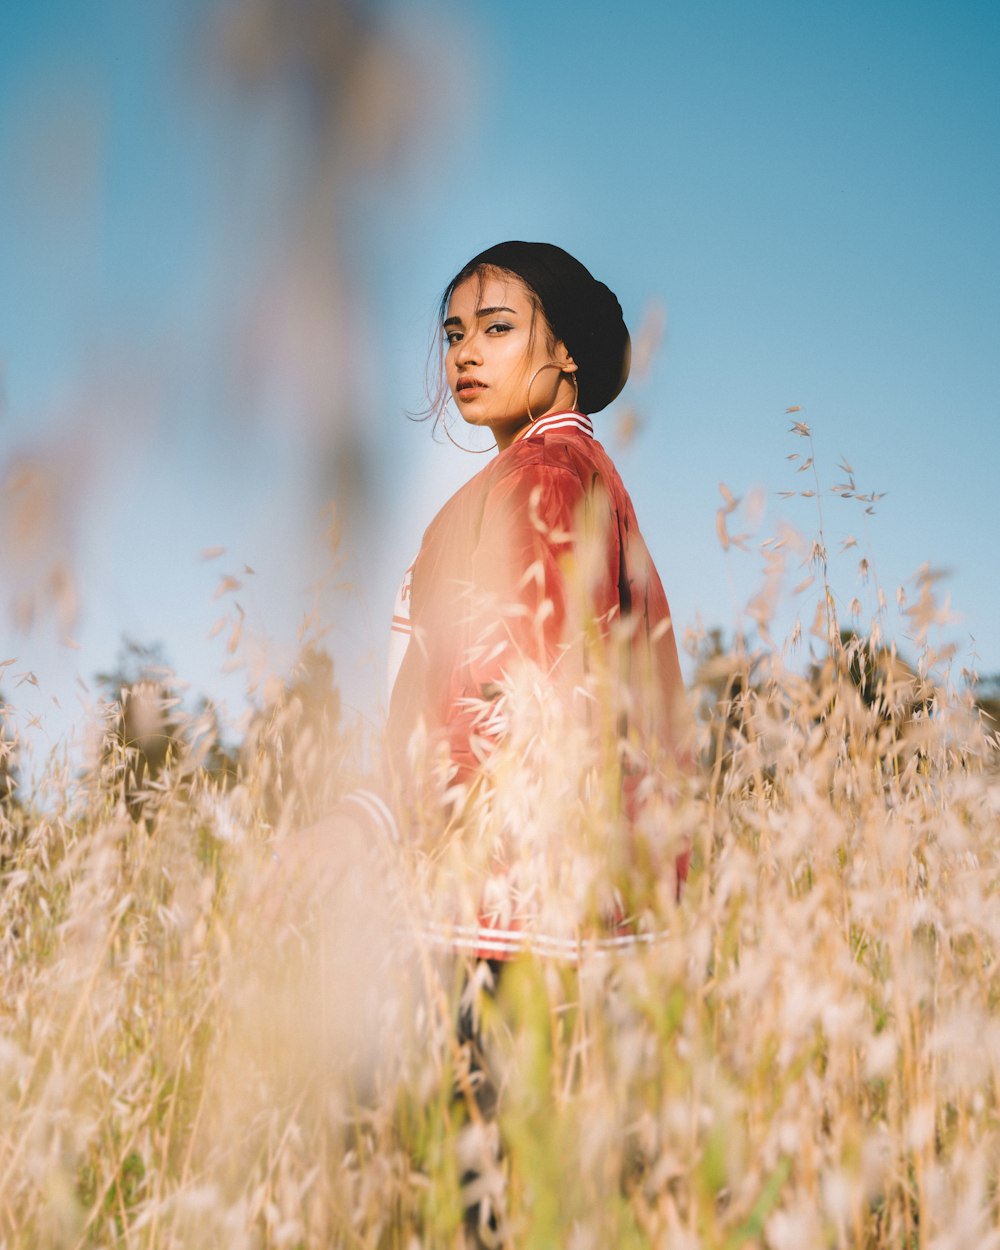 femme en robe rose debout sur le champ d’herbe brune pendant la journée